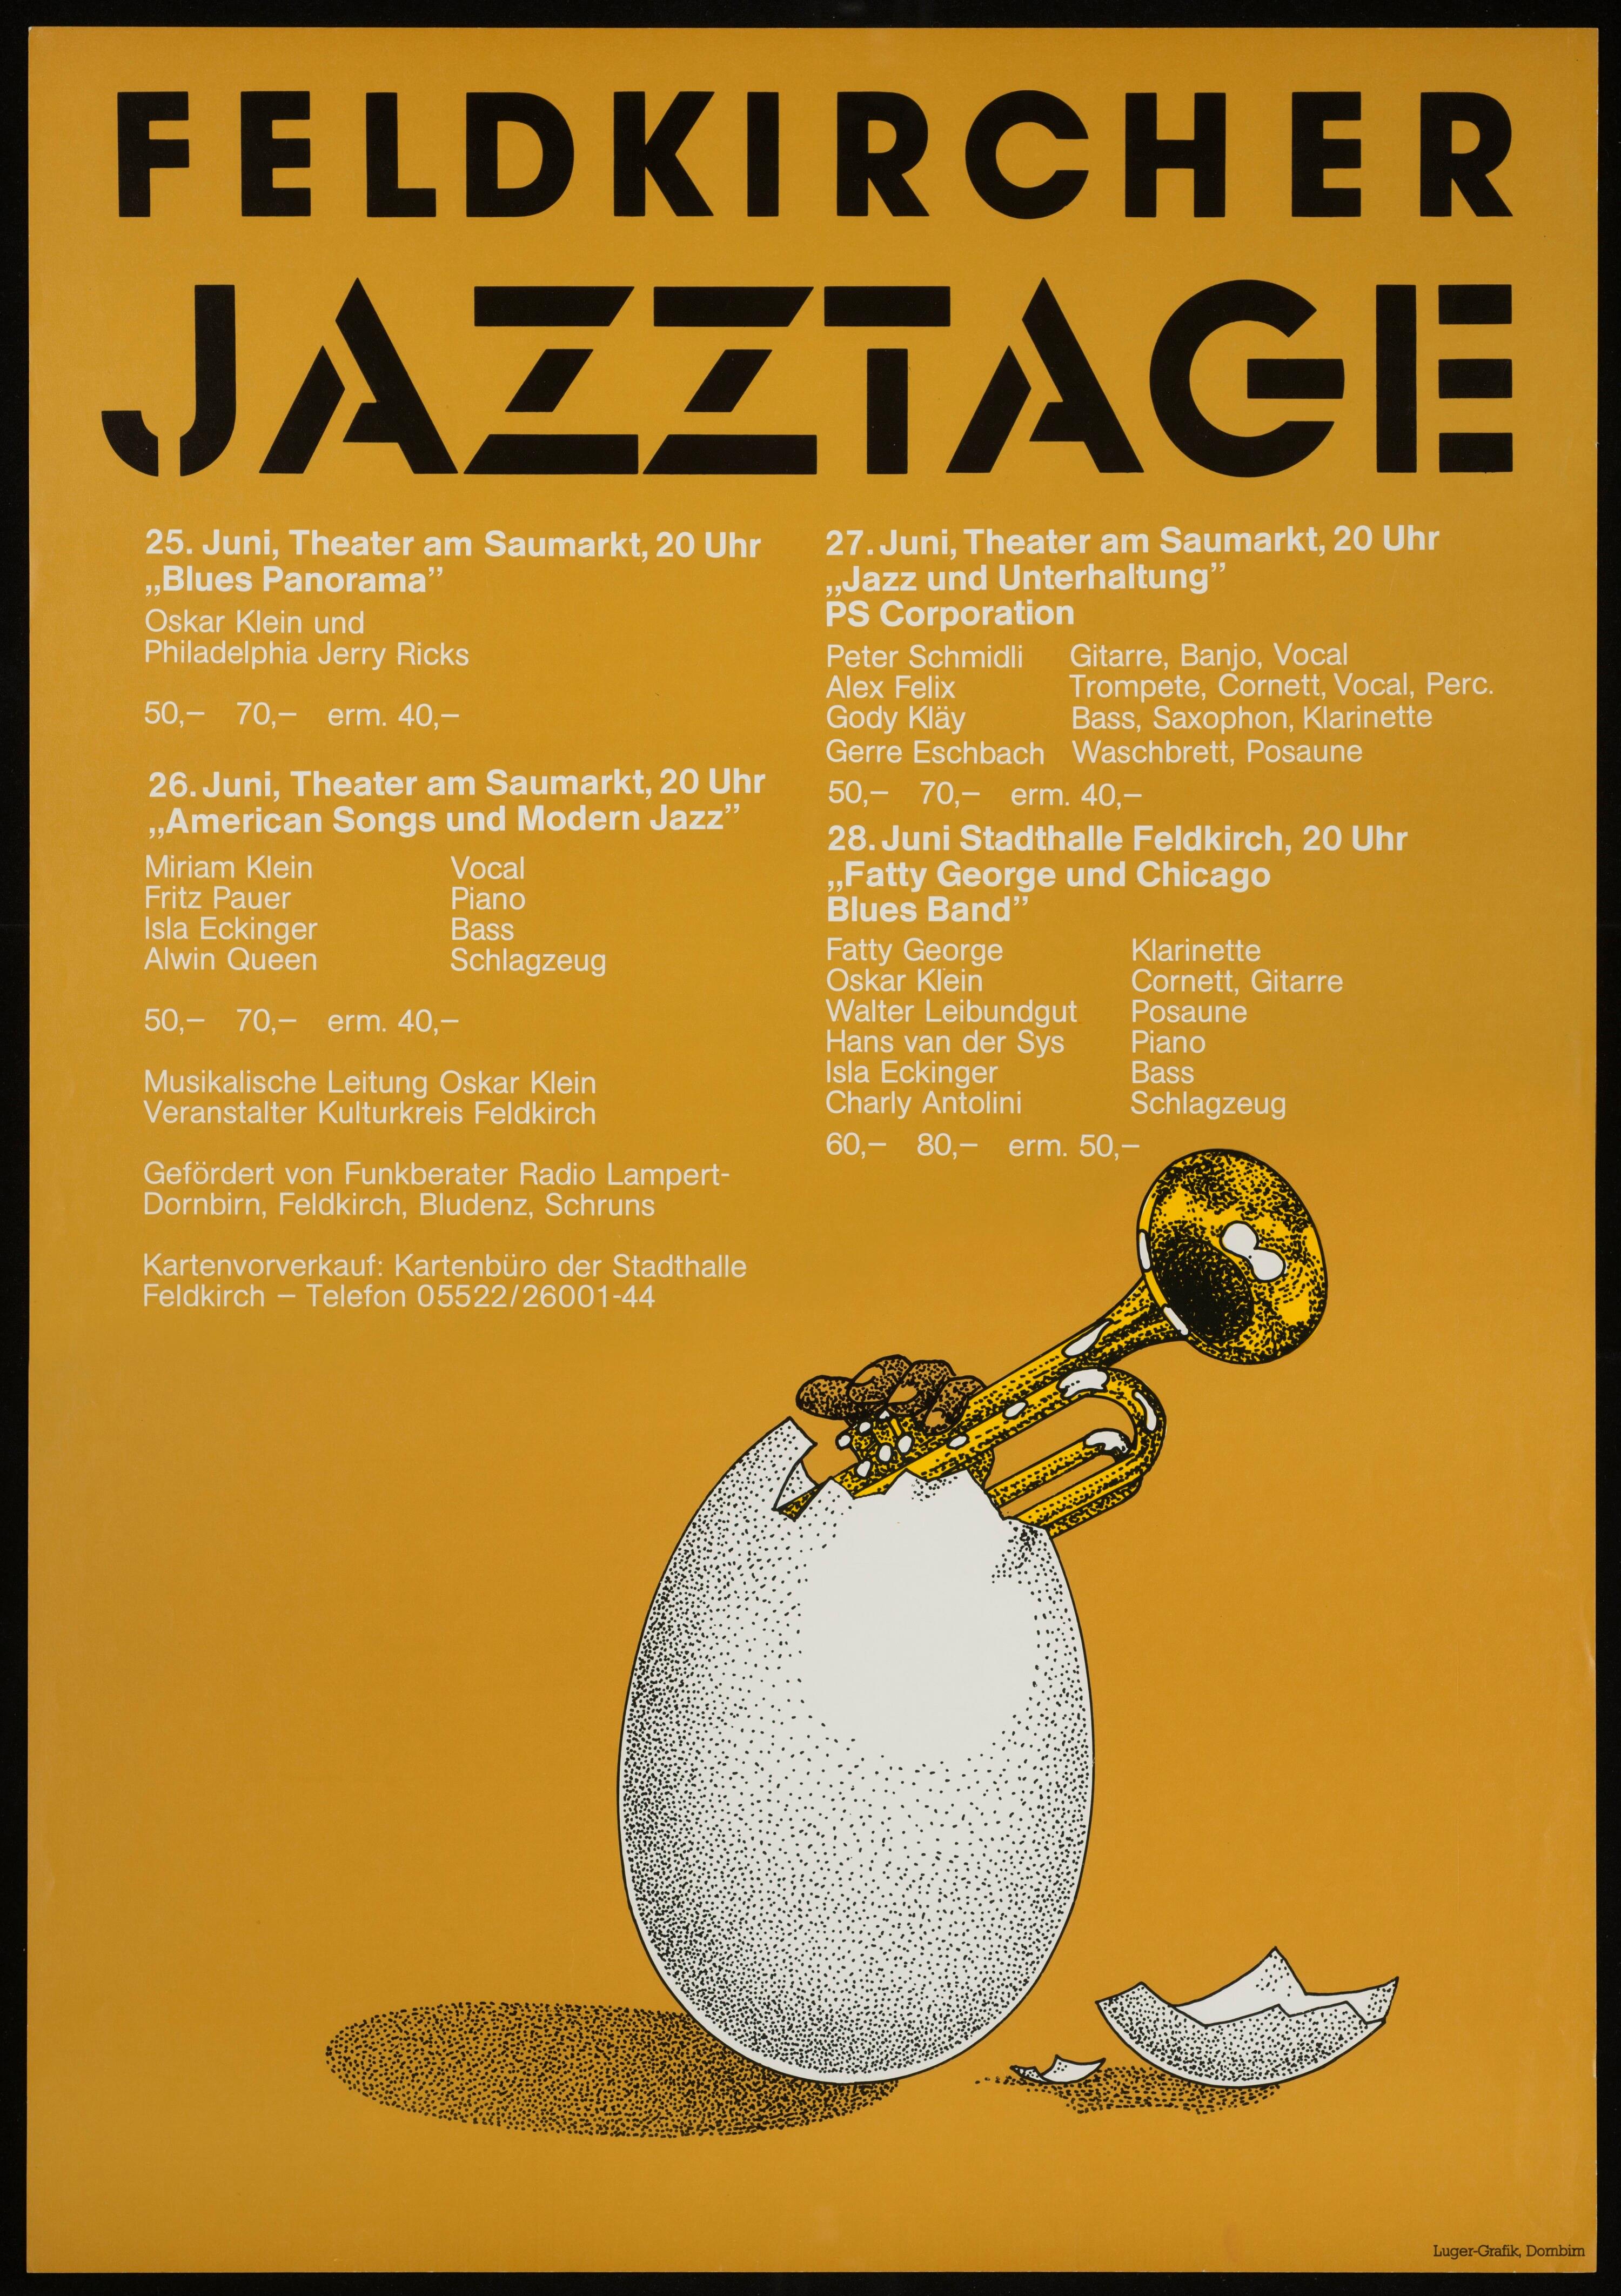 Feldkircher Jazztage></div>


    <hr>
    <div class=